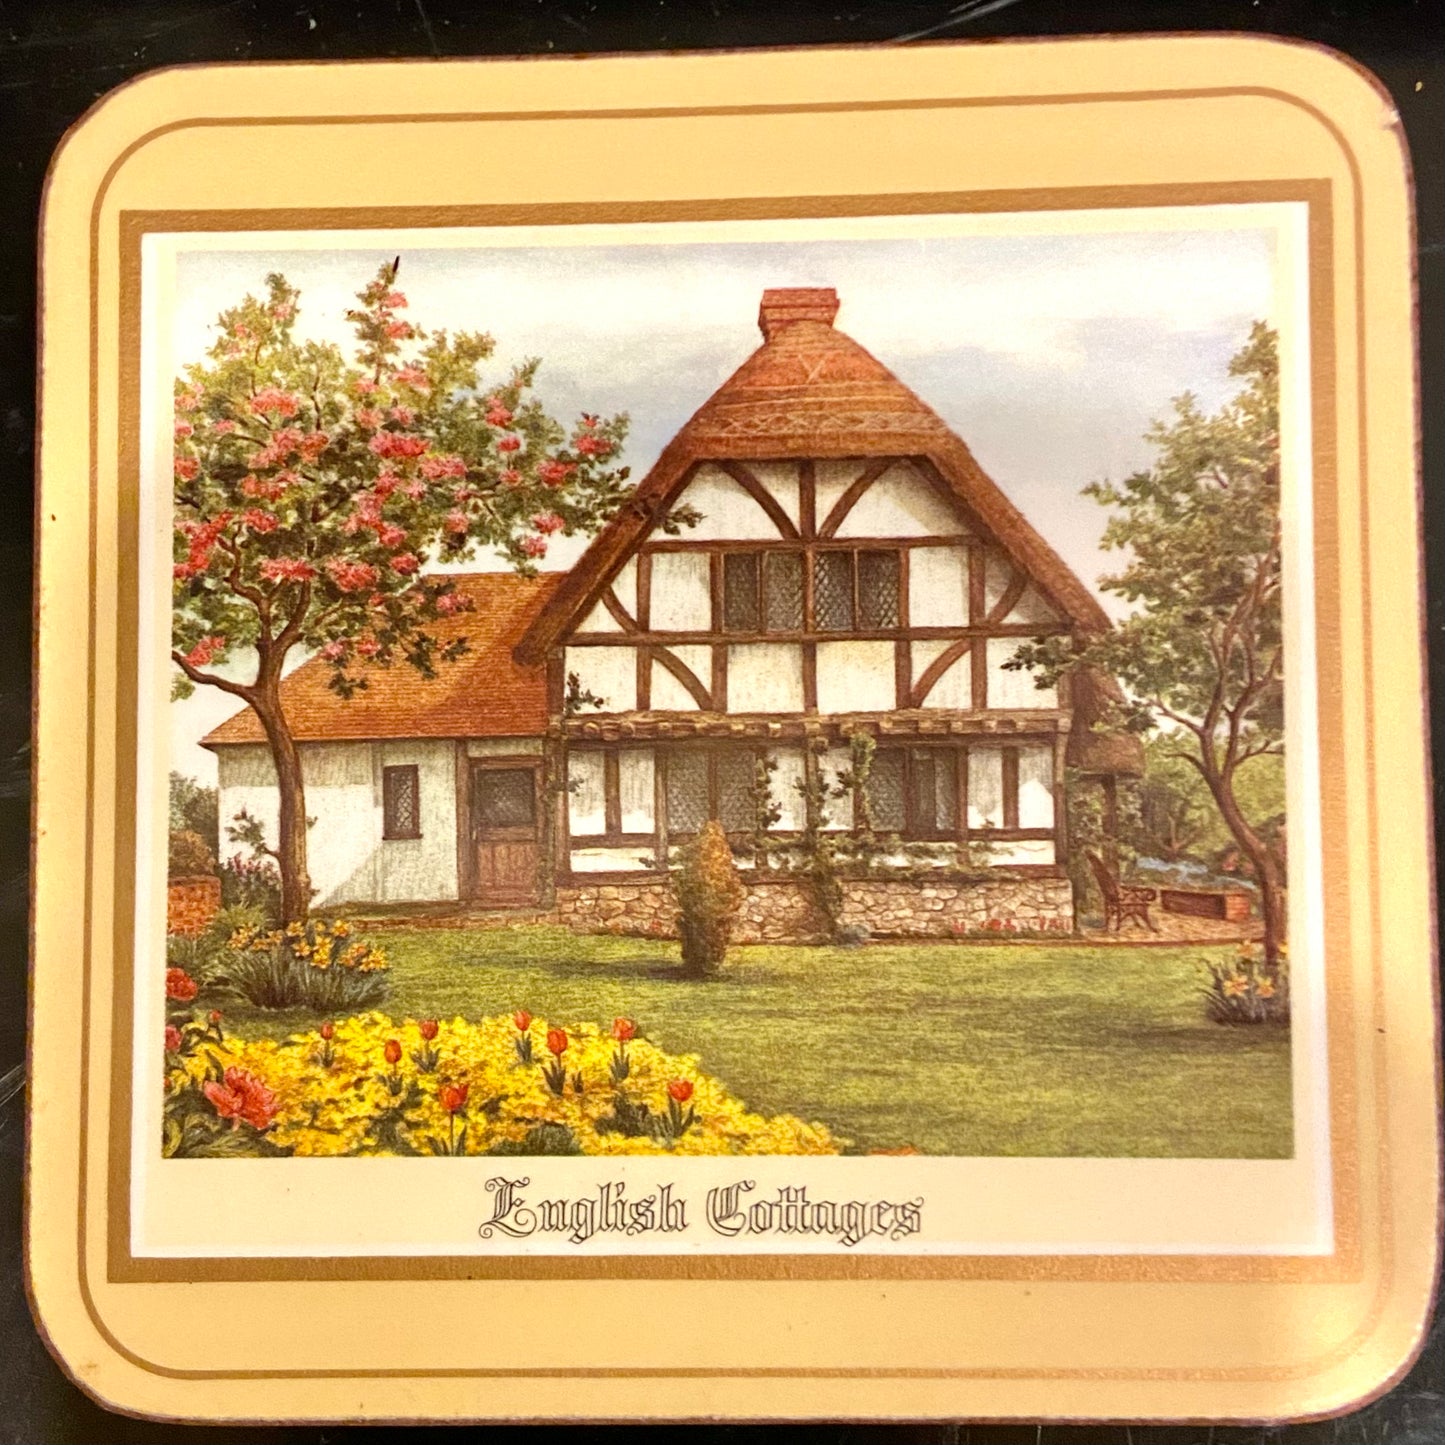 Set of 6 vintage Pimpernel of England cork coasters